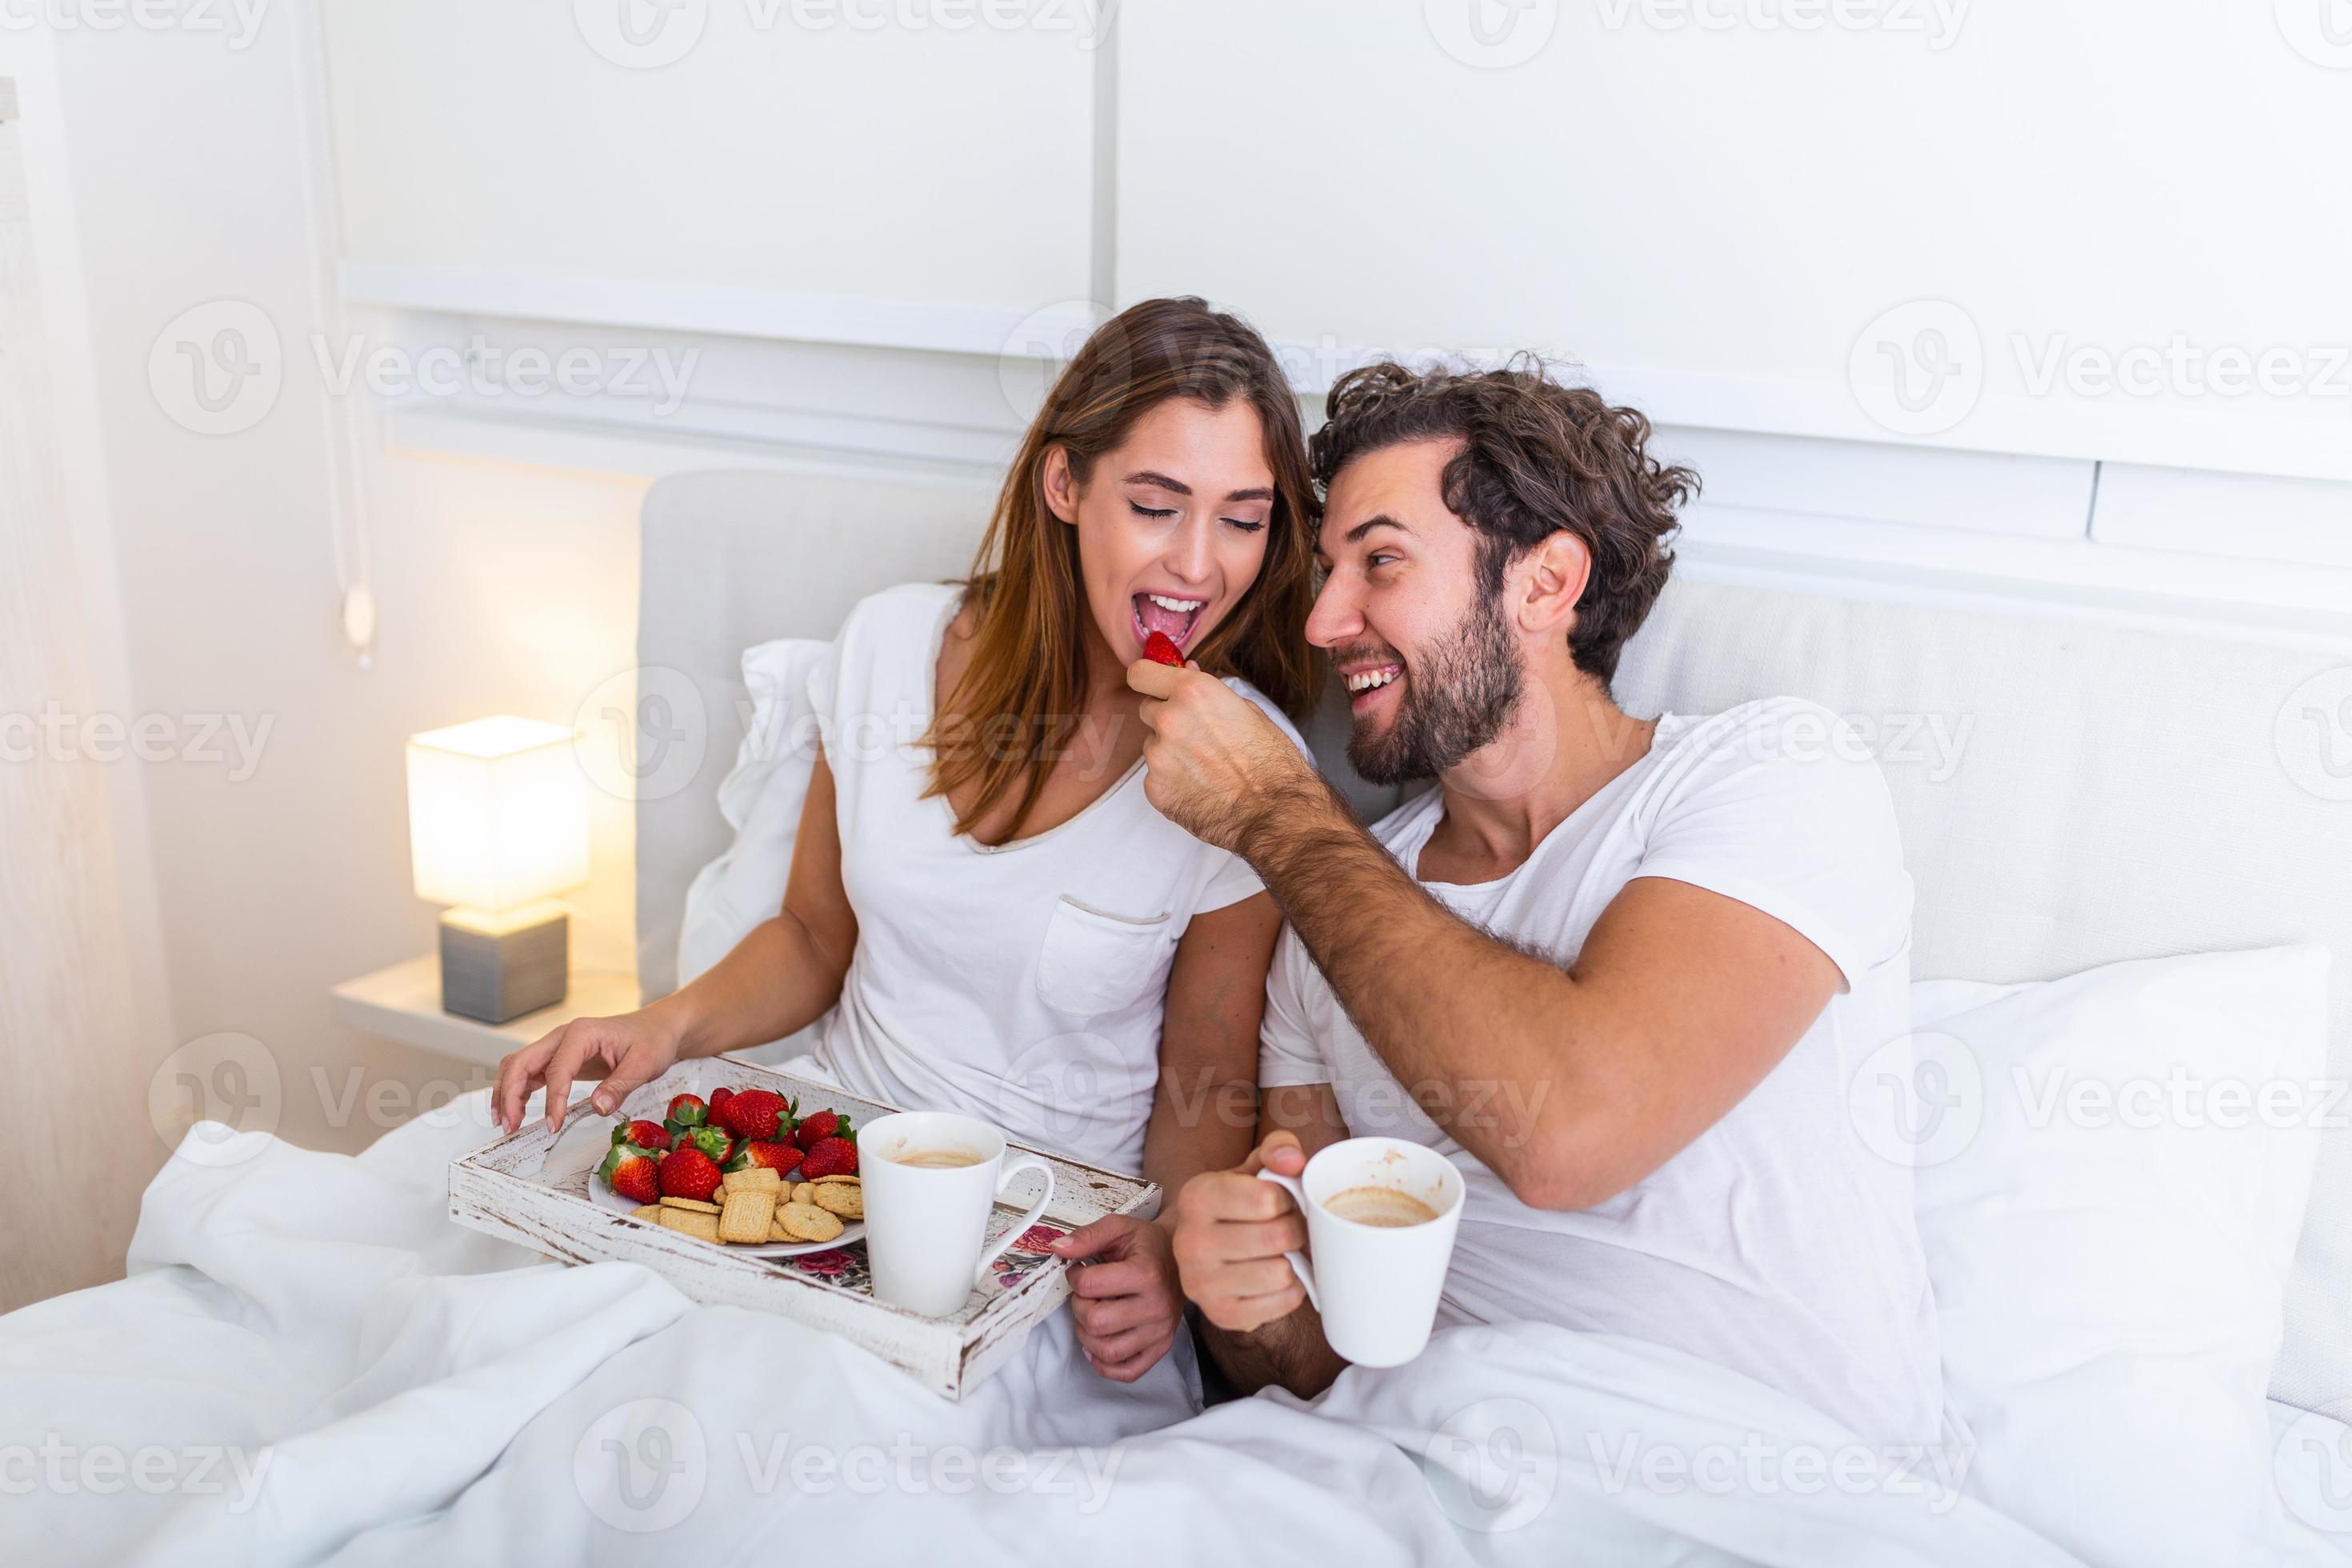 Le petit déjeuner romantique au lit : le must des amoureux - Le